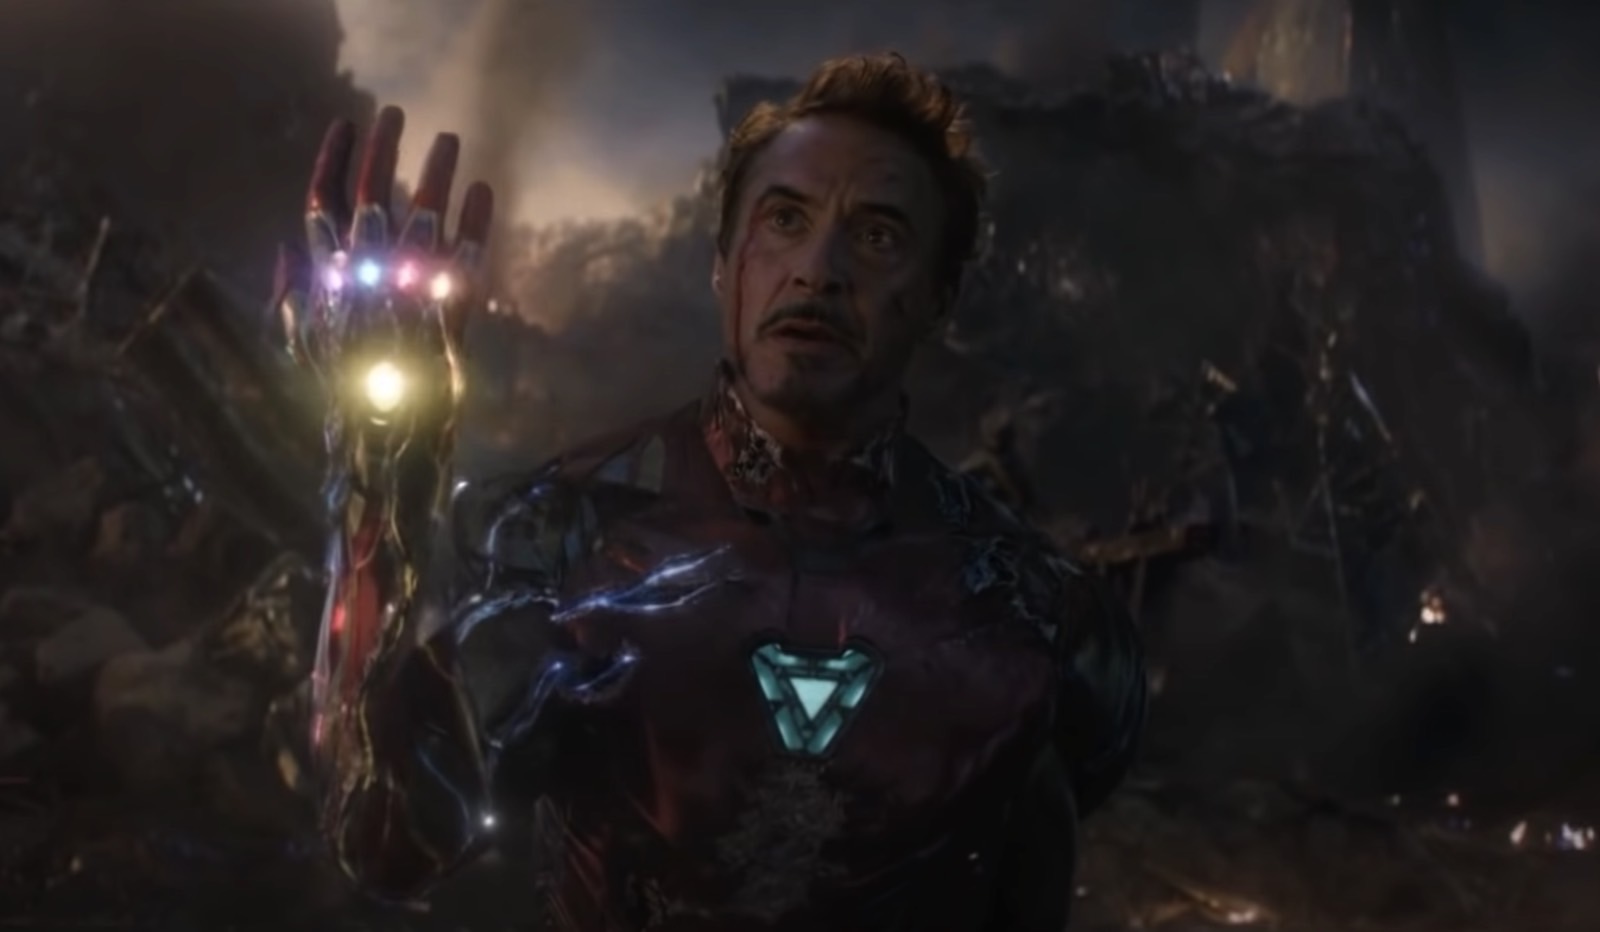 Marvel spent more than $1 billion on Avengers: Infinity War & Endgame